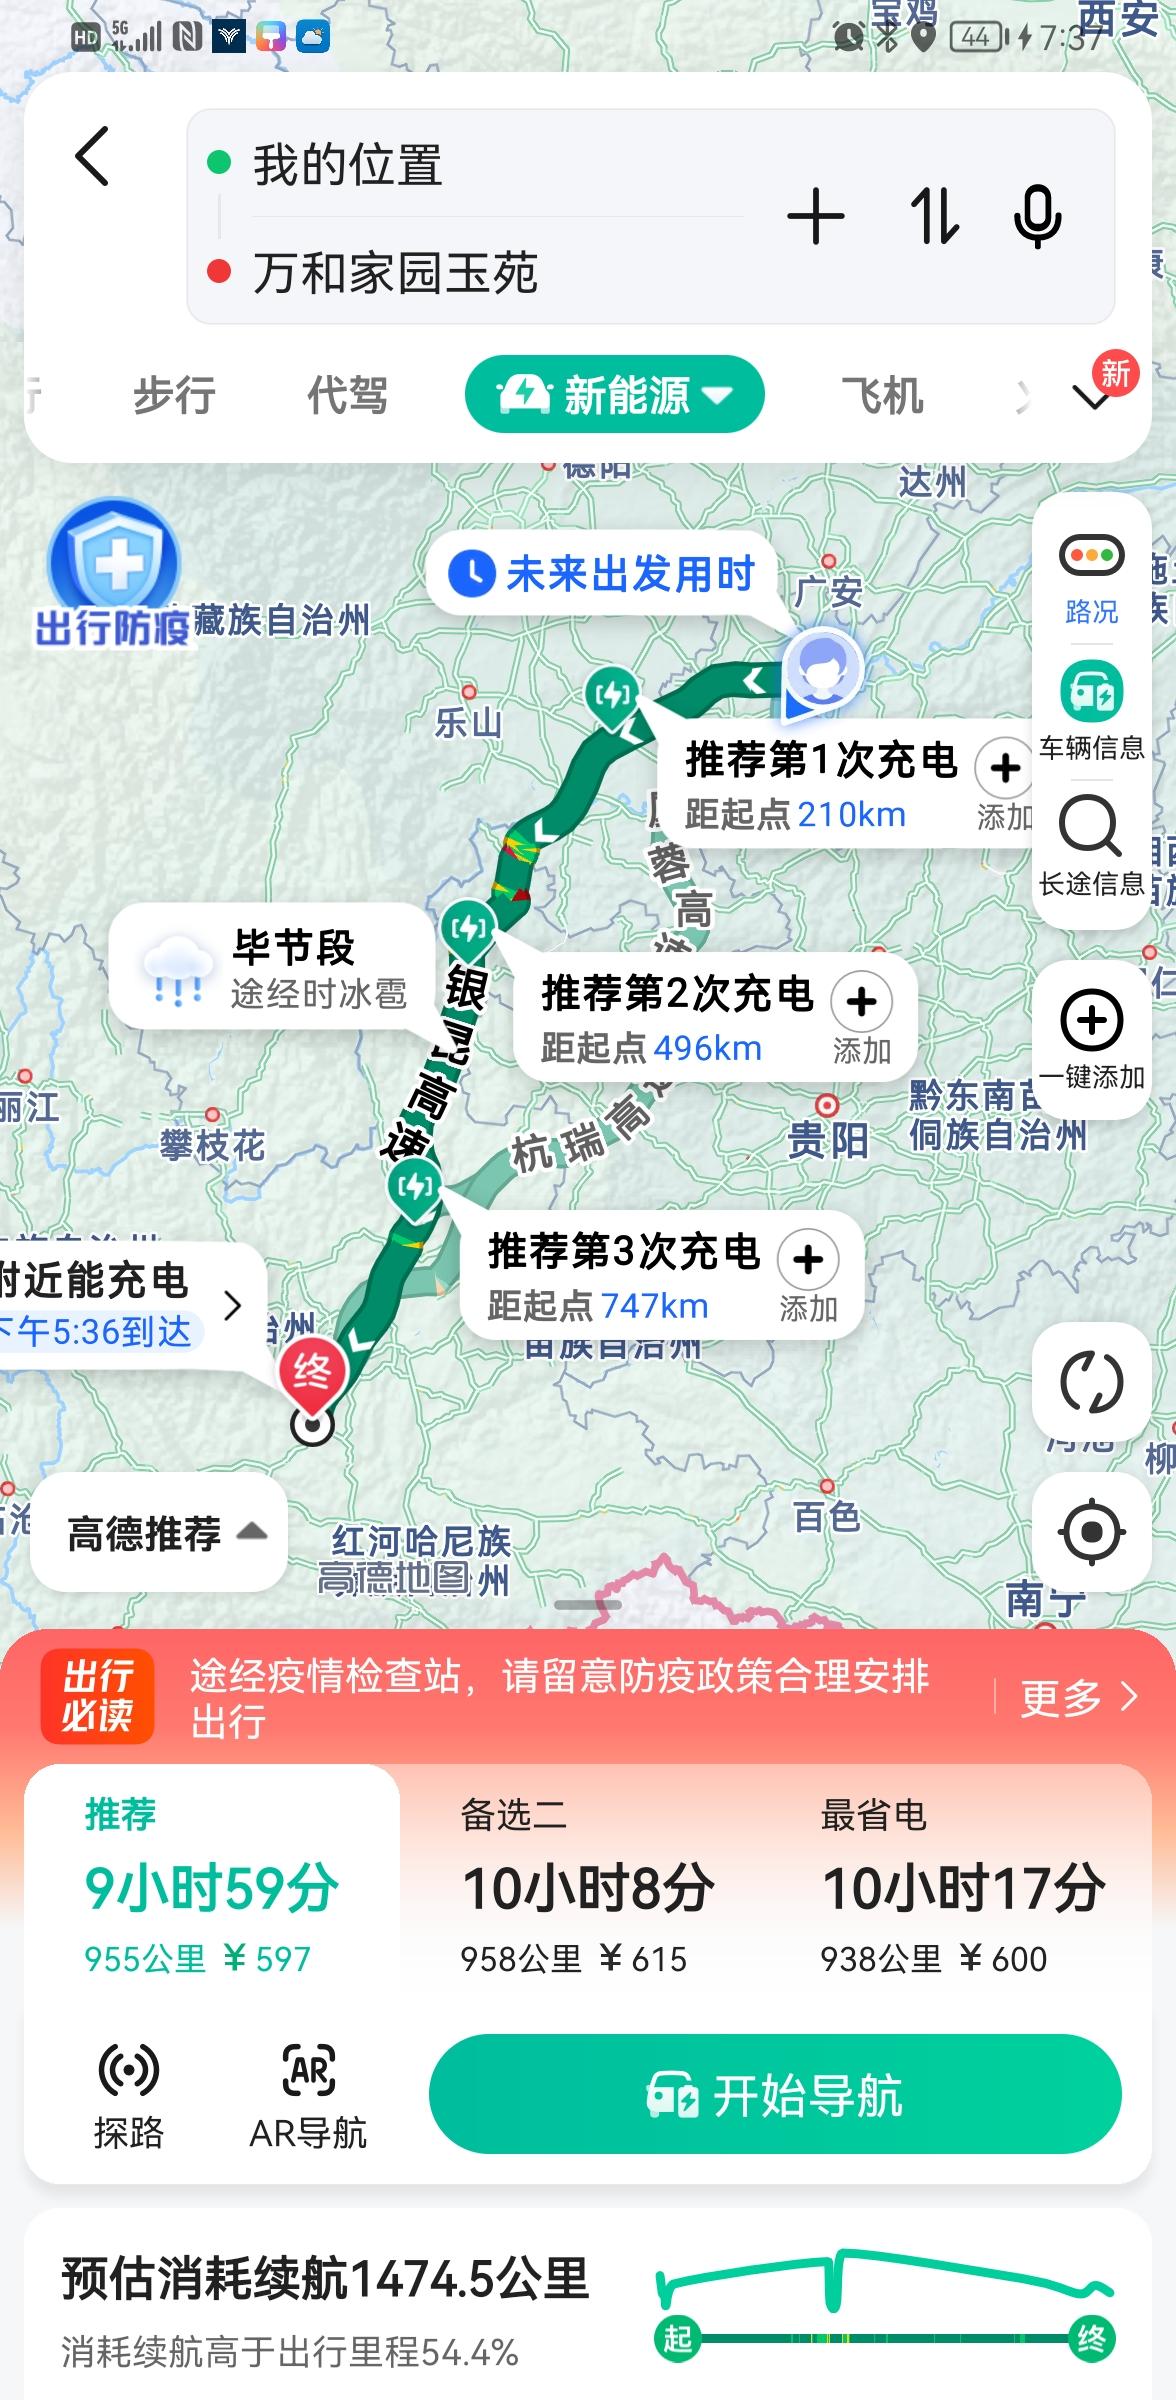 哪吒哪吒U 准备驾车从重庆去到玉溪，单面934公里，各位车友有什么提醒的事项么？这个路上导航提示的加油点准确么？